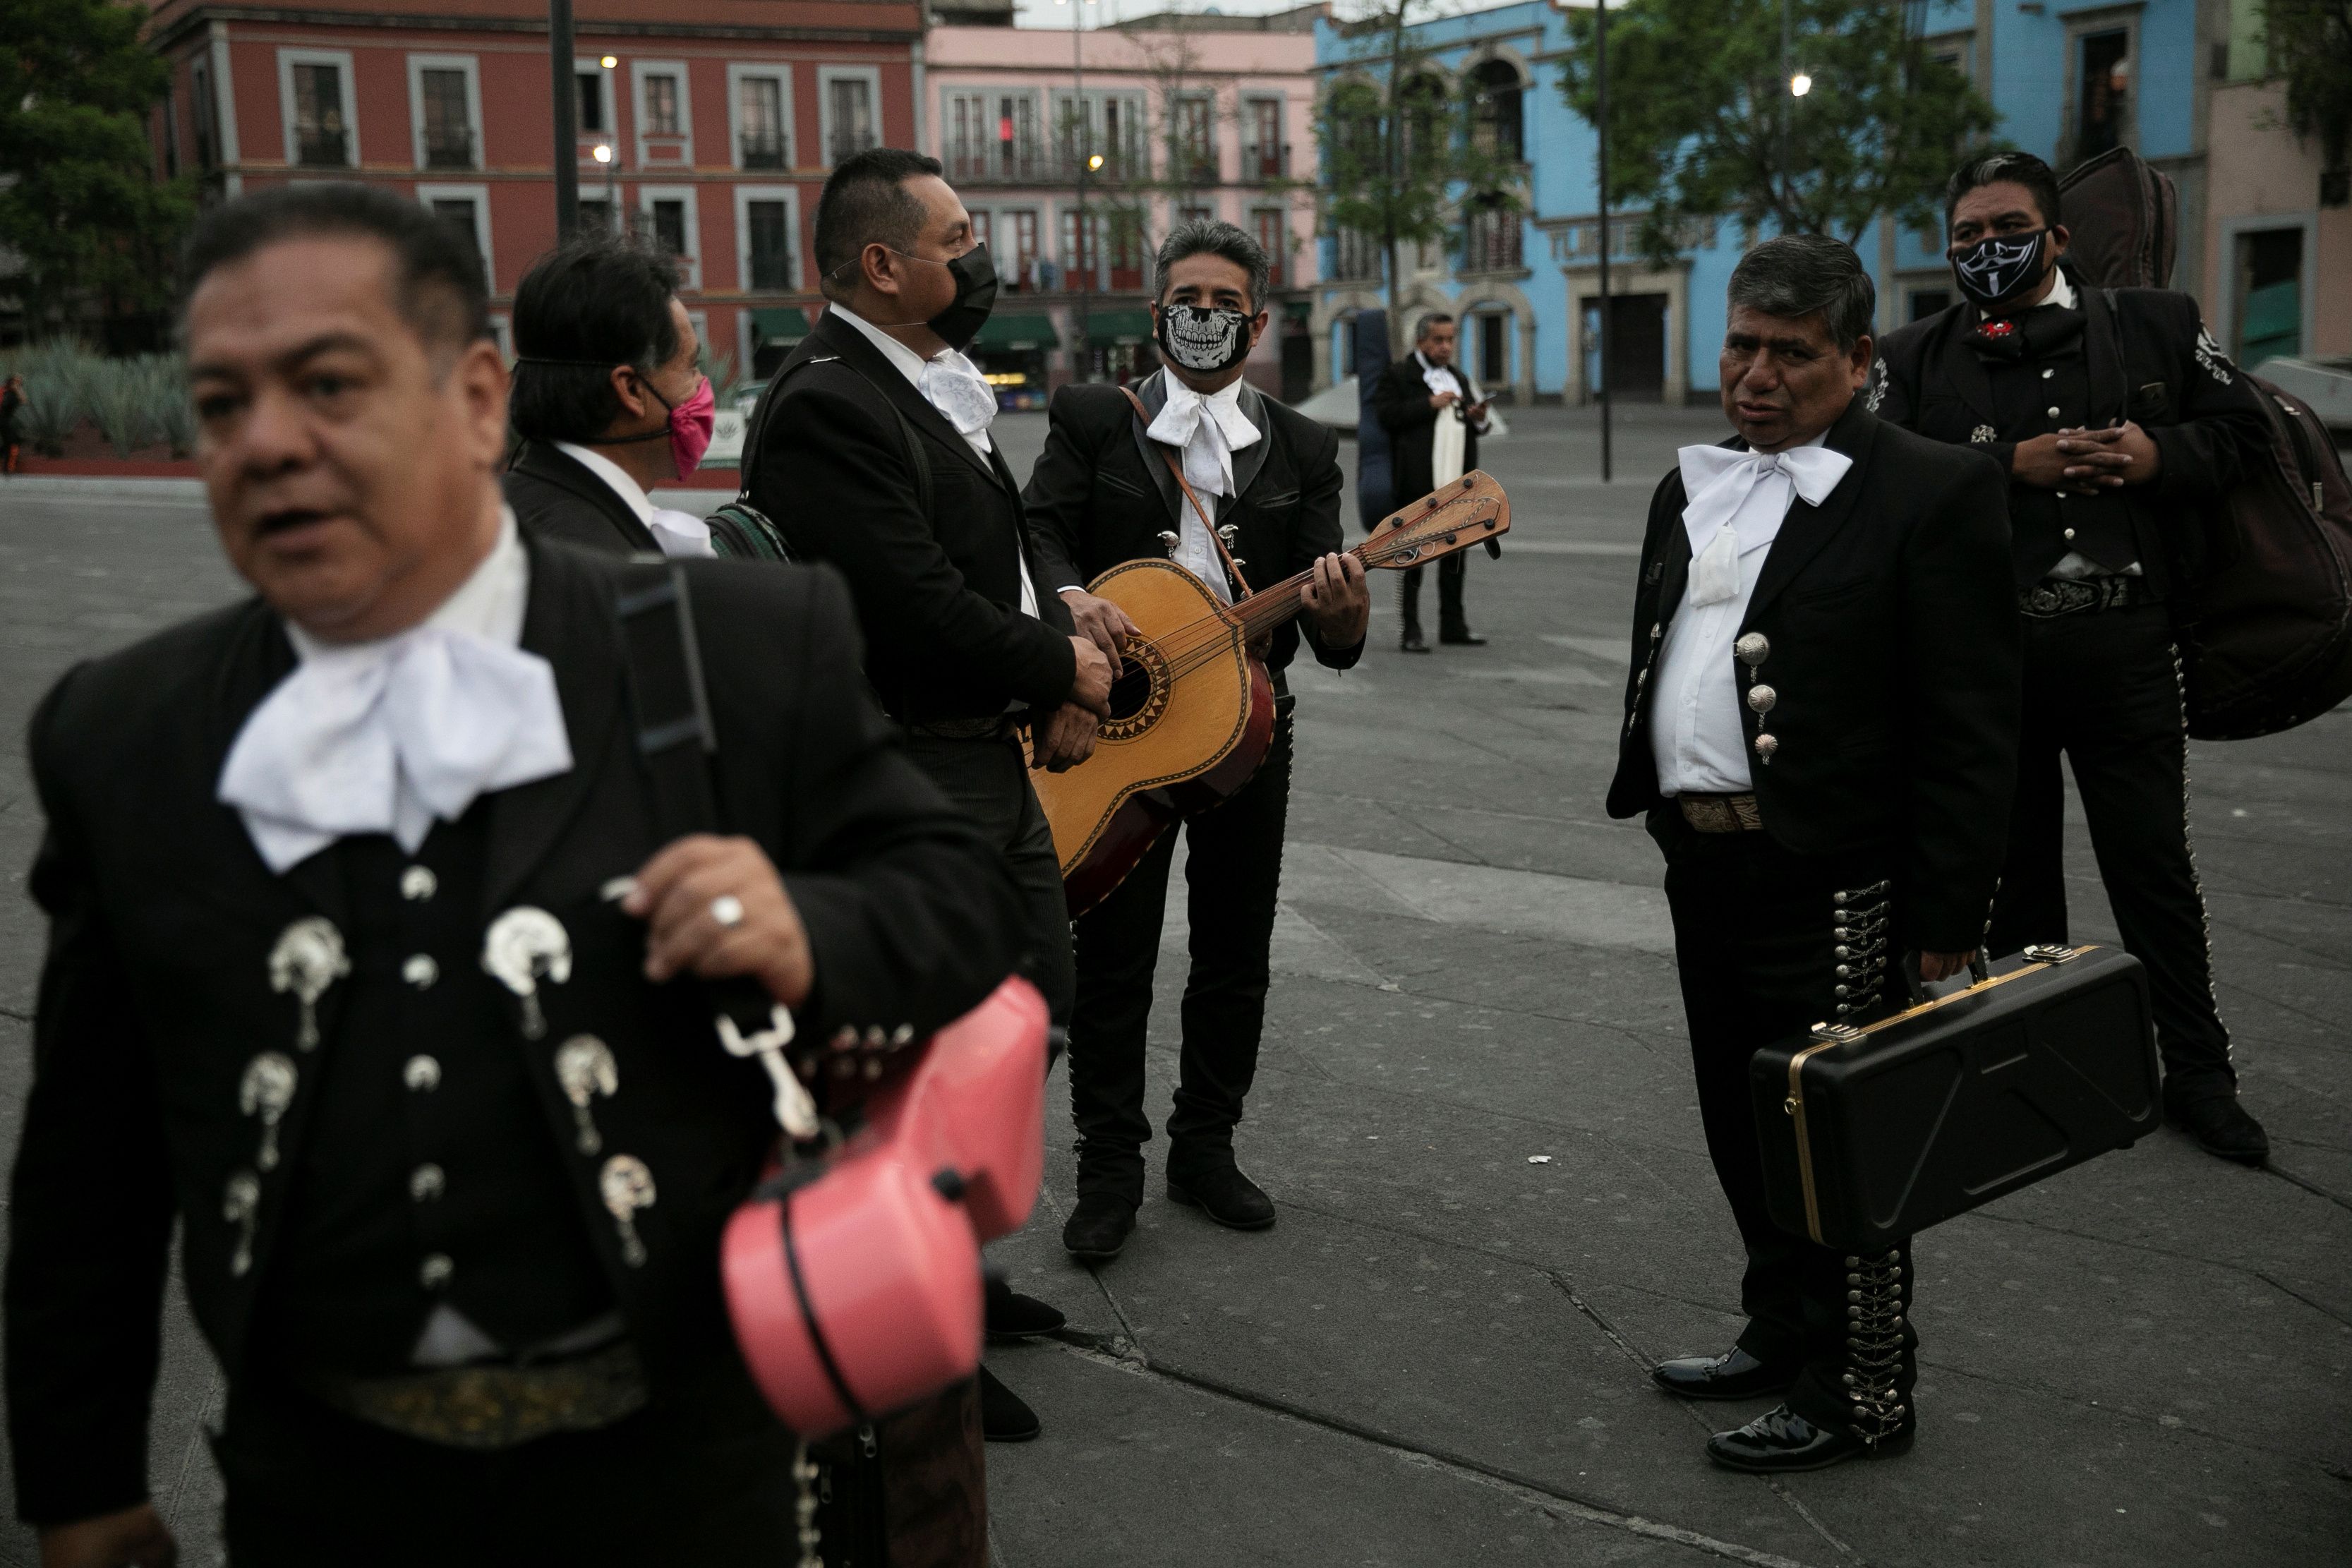 Мариачи ждут клиентов на Plaza Garibaldi, протестуя против того, чтобы им разрешили выступить на этом месте и получить доступ к государственной финансовой помощи, поскольку музыкальные выступления, которые являются их основным источником дохода, пострадали из-за продолжающейся вспышки коронавирусной болезни (COVID -19), в Мехико, Мексика, 14 мая 2020 г. REUTERS/Carlos Jasso